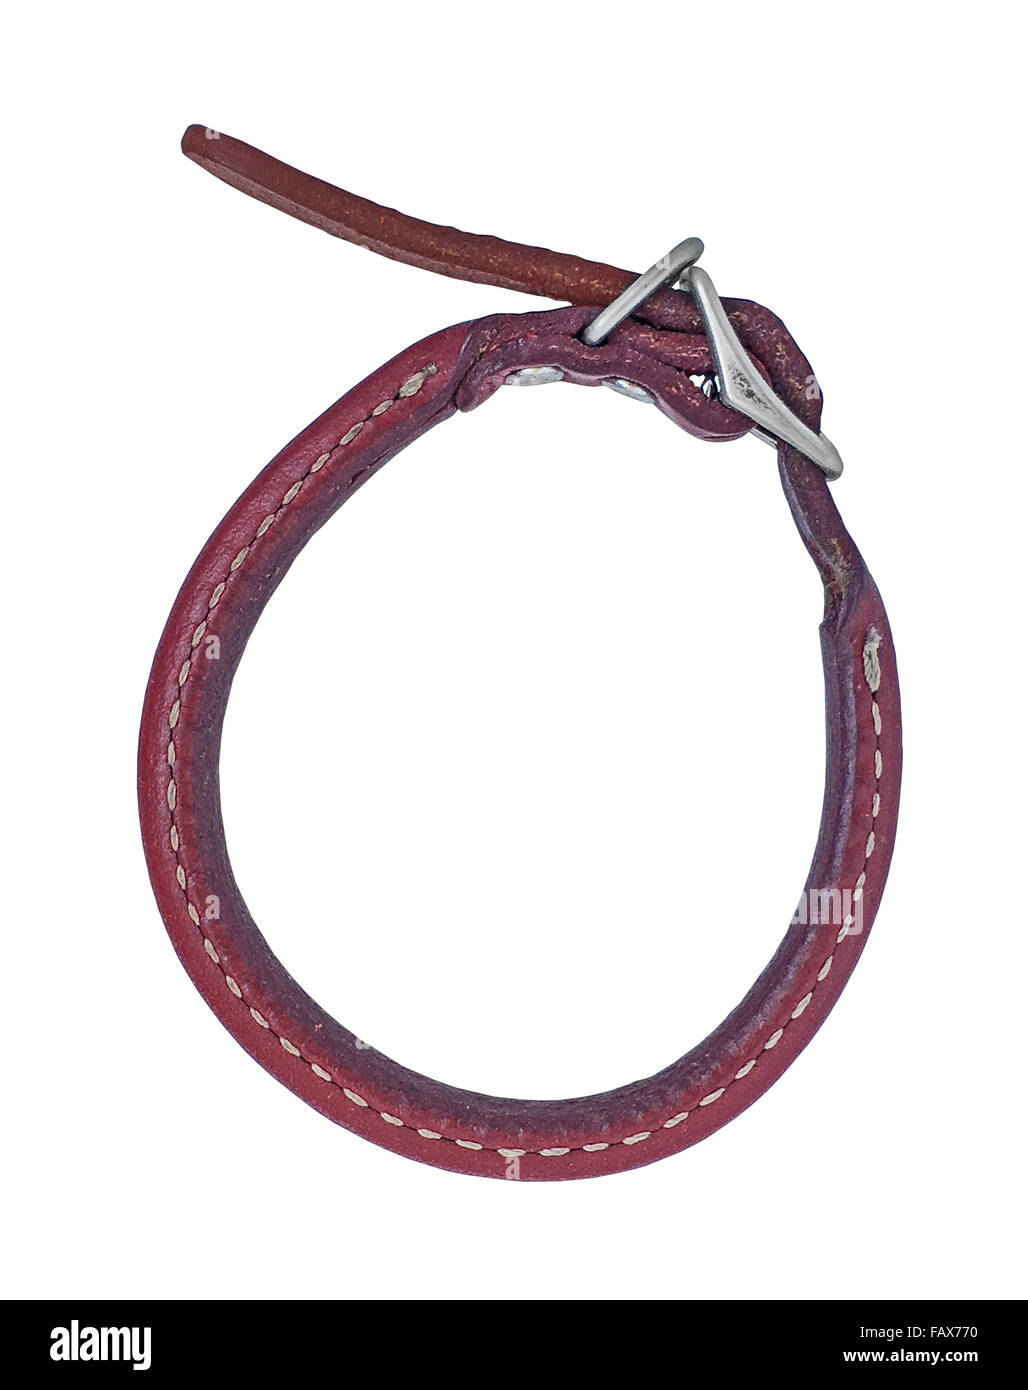 Vintage Collier pour chien en cuir rouge sur fond blanc Banque D'Images